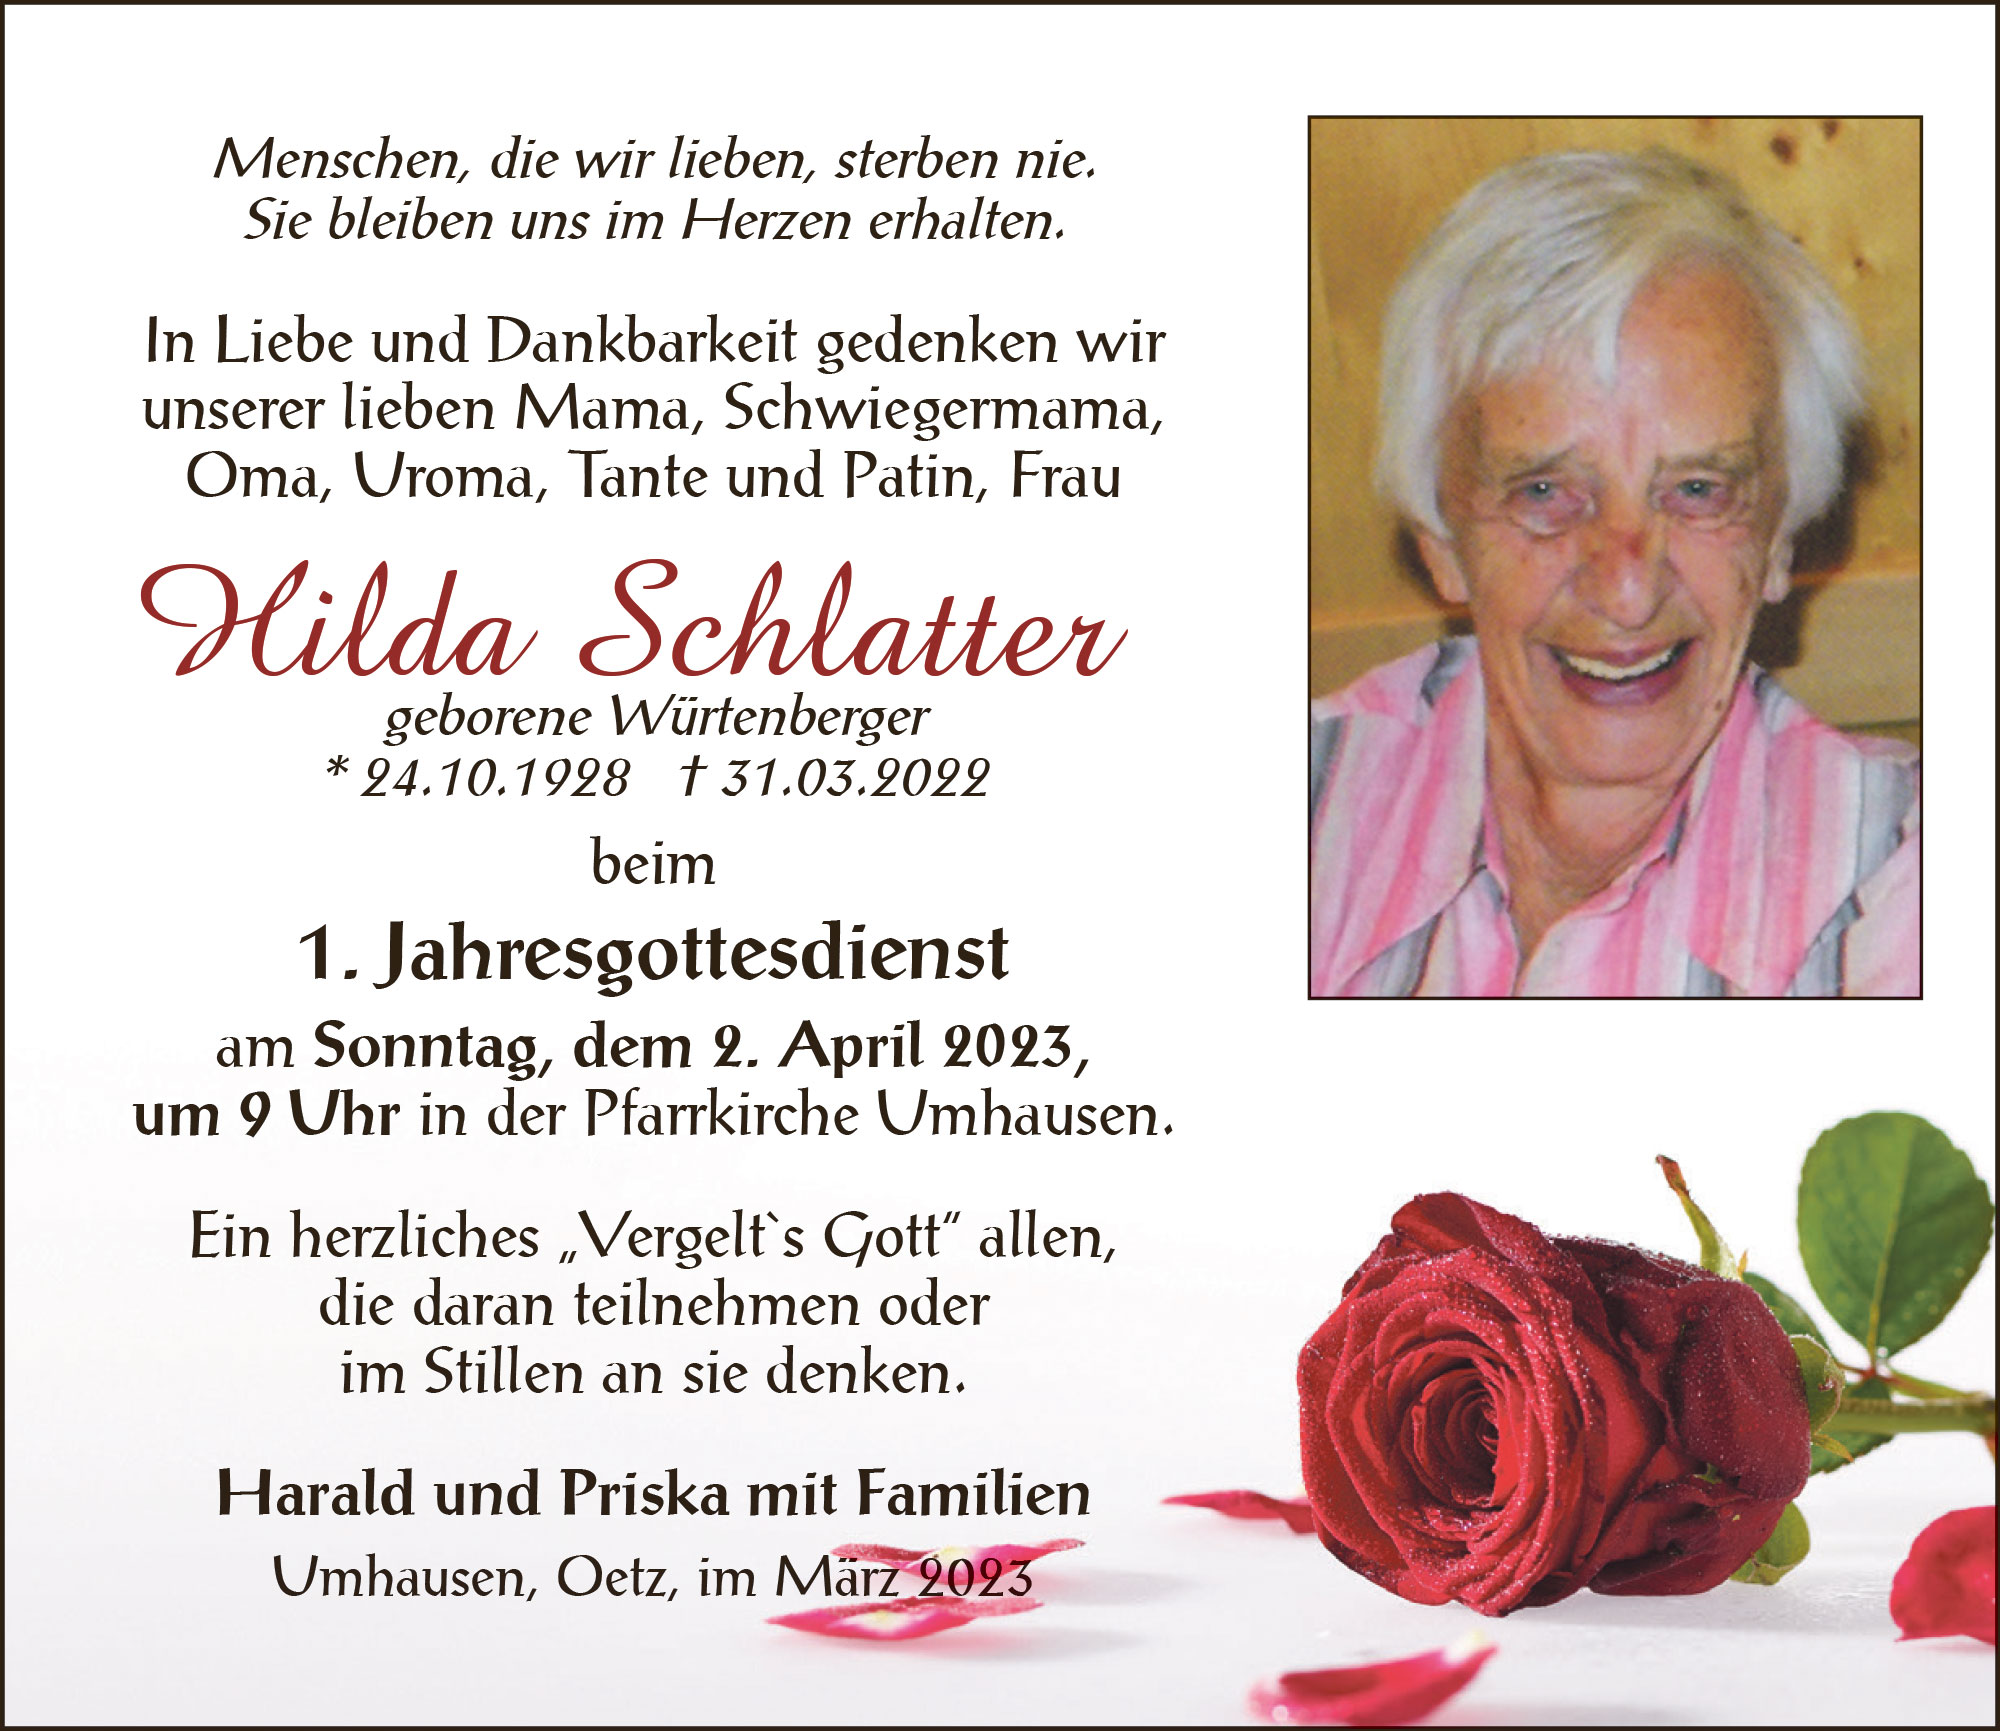 Hilda Schlatter